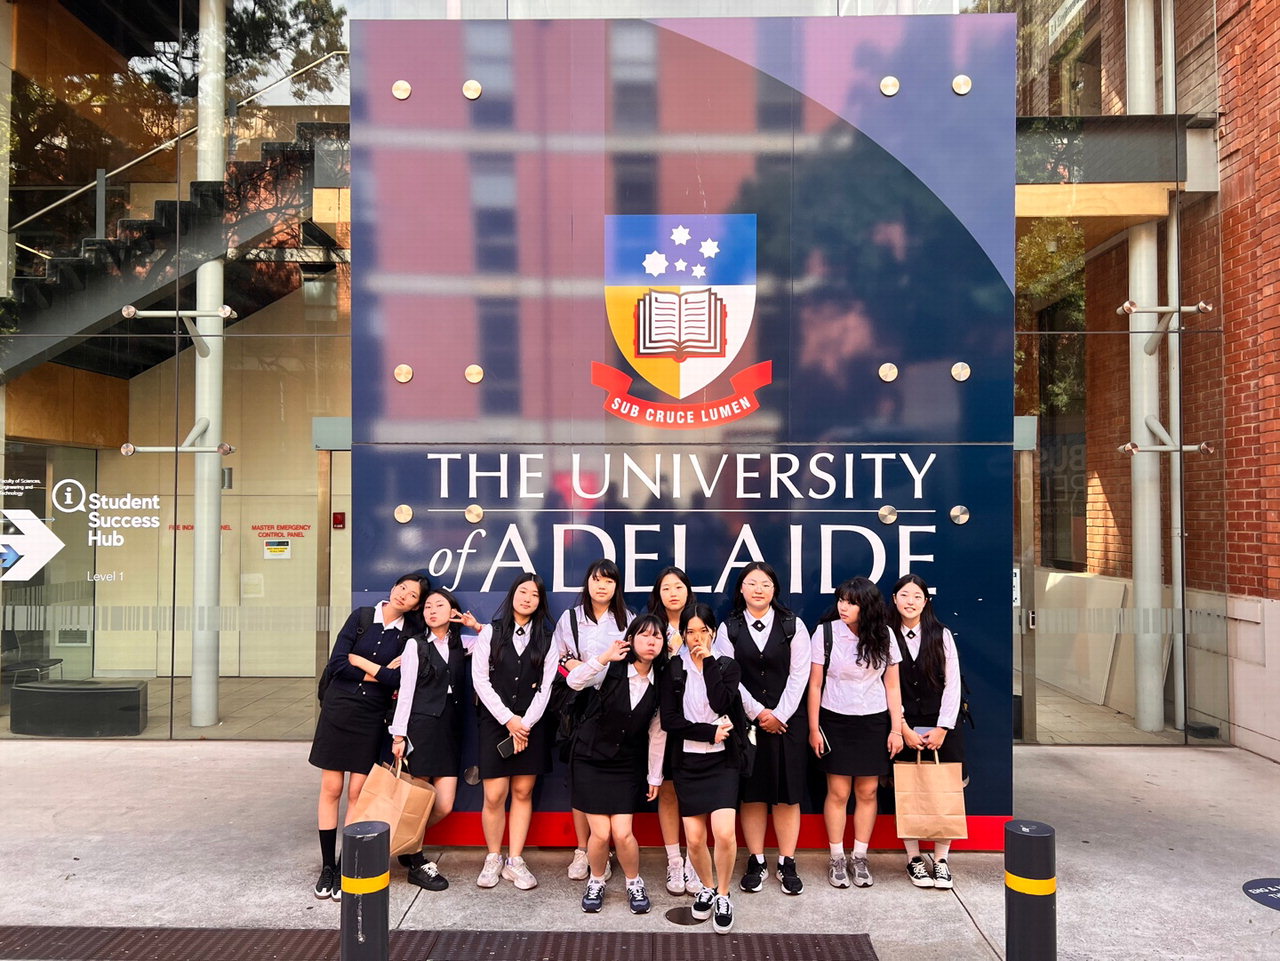 청주중앙여고 학생들이 글로벌 리더 양성 체험학습에 참여해 애들레이드 대학교를 방문해 기념촬영 하고 있다.